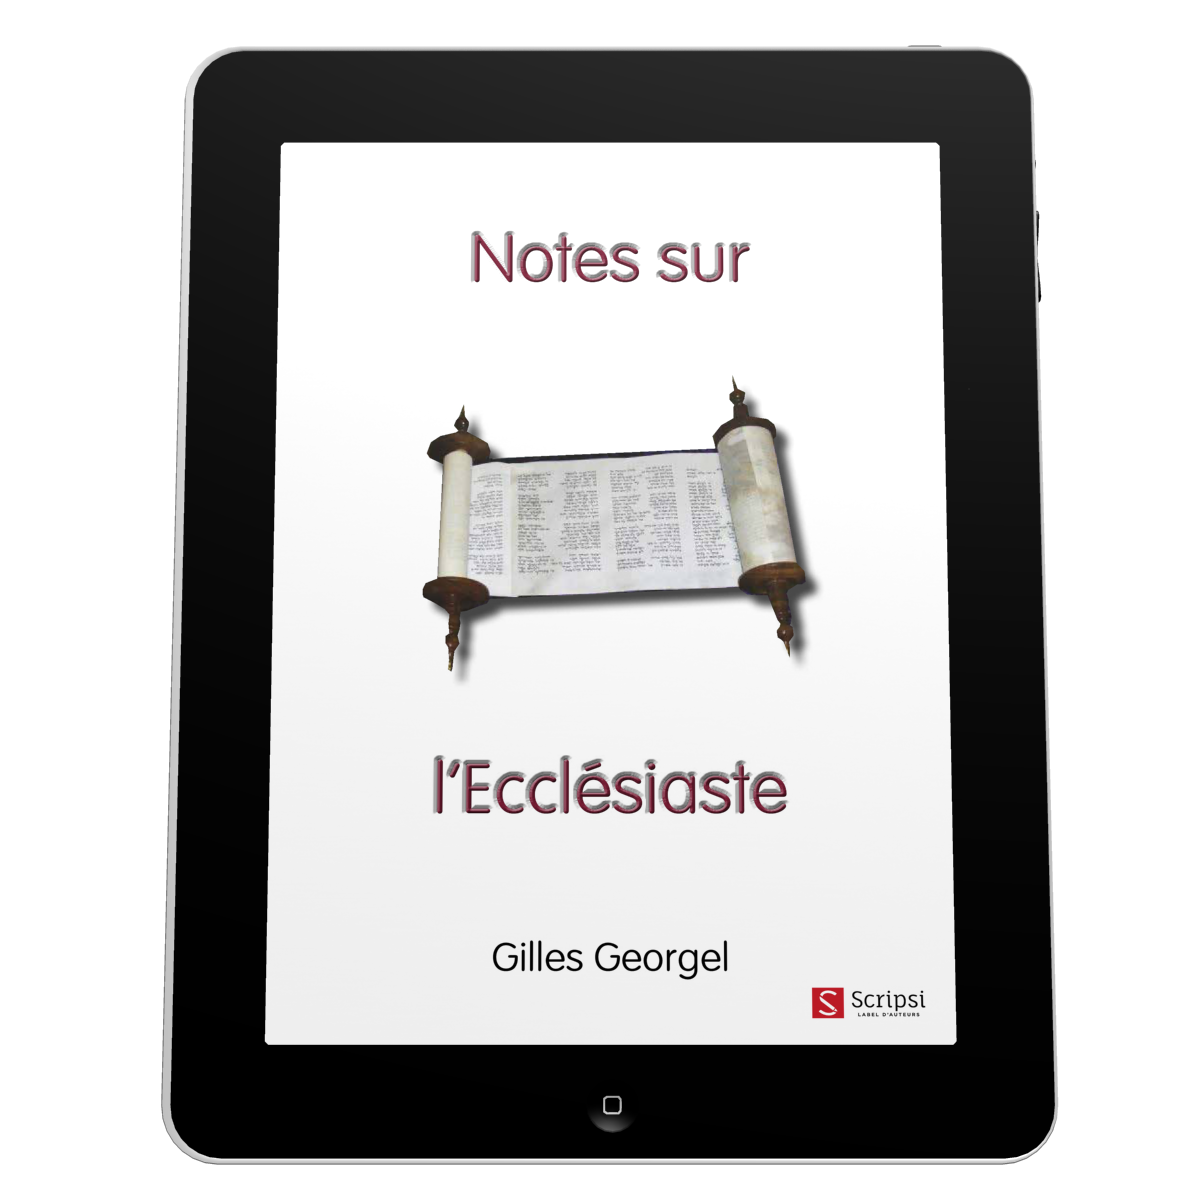 Notes sur l'Ecclésiaste - EBOOK